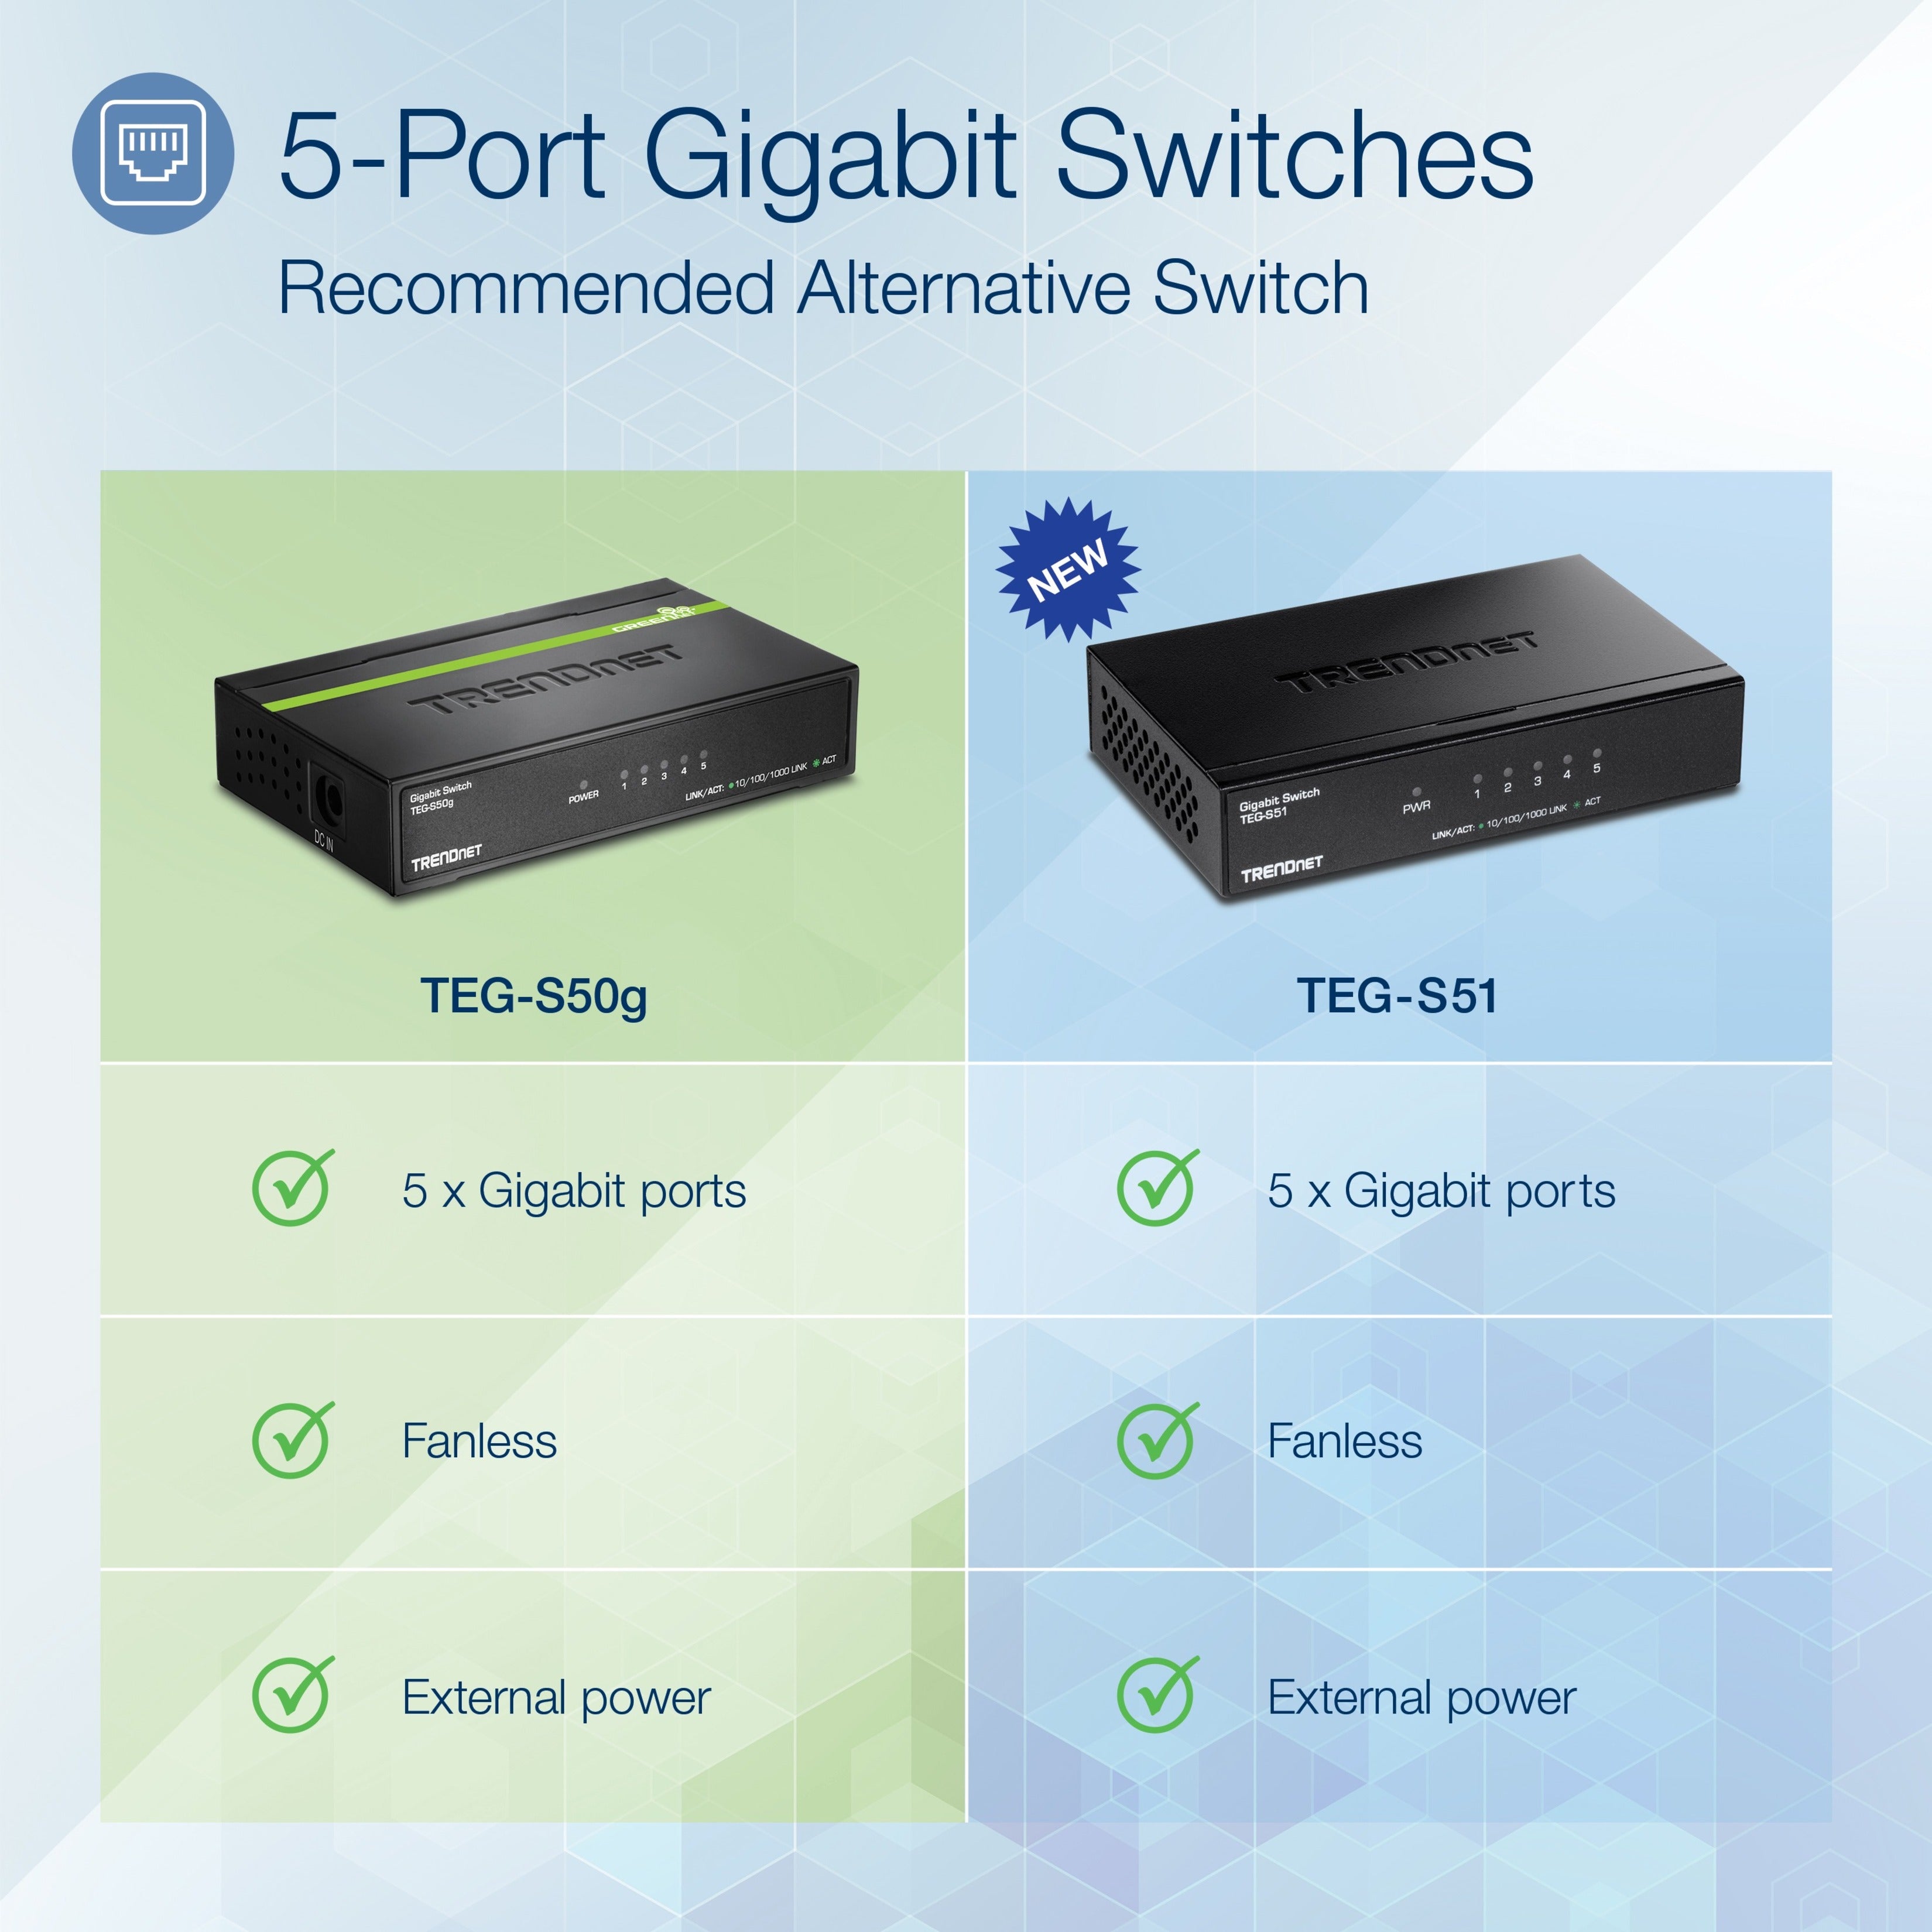 TRENDnet TEG-S50G 5-port Gigabit GREENnet Switch, Ethernet